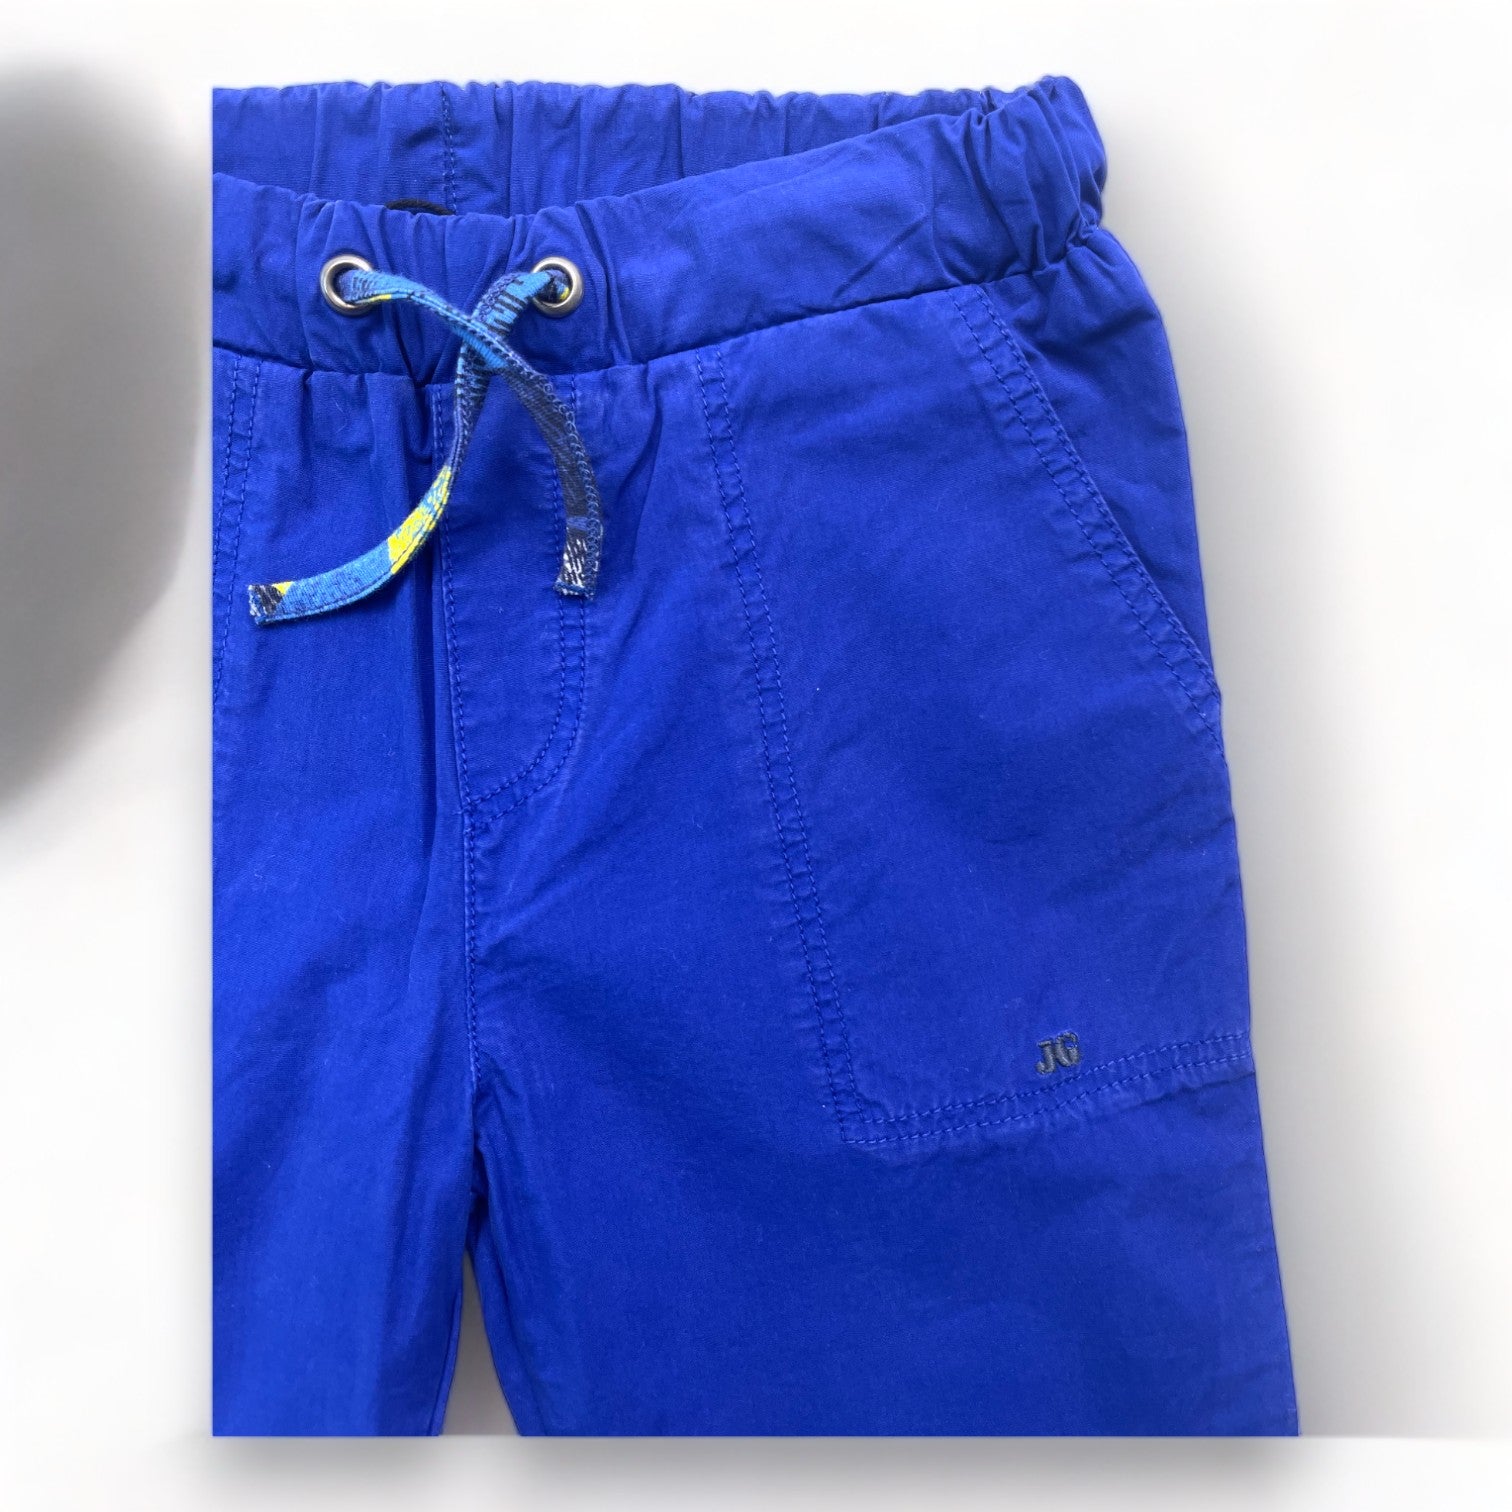 JUNIOR GAULTIER - Pantalon droit bleu profond (neuf) - 4 ans